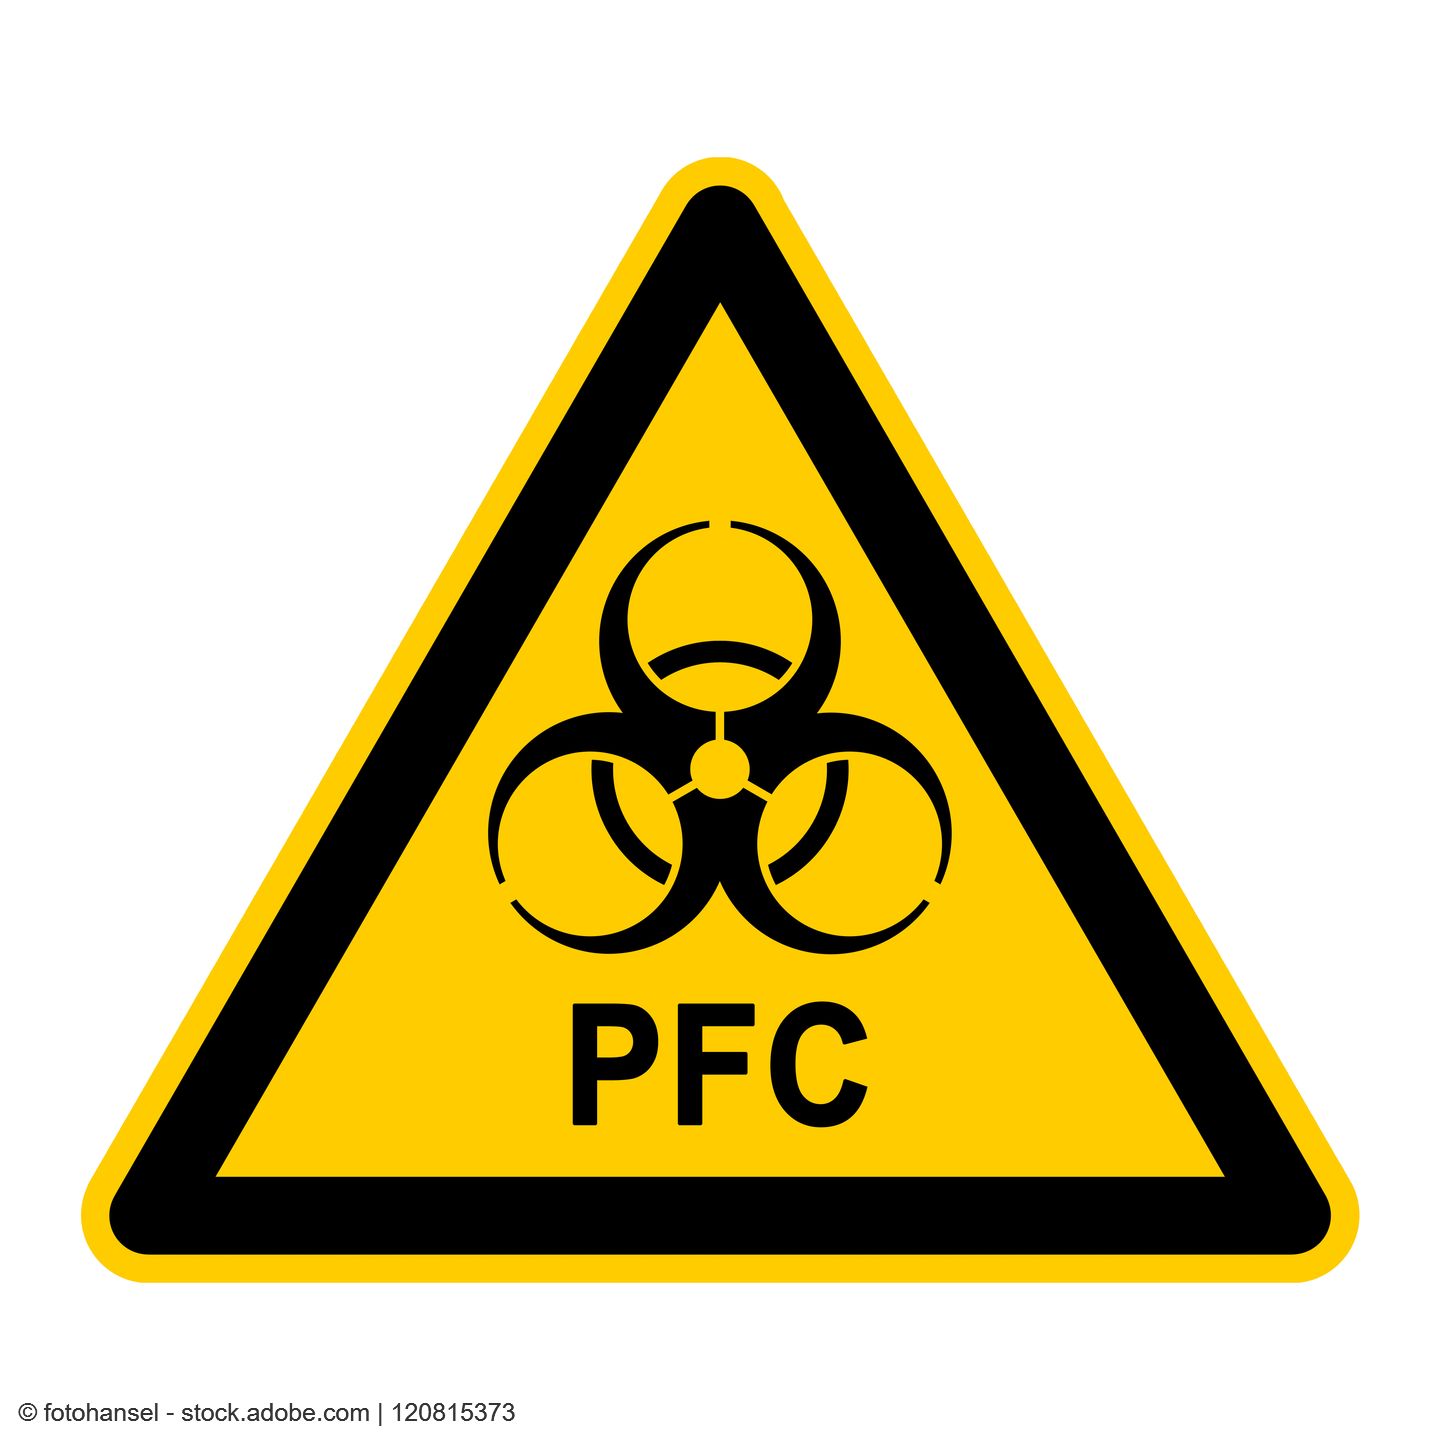 Gelbes Warnschild auf dem PFC in schwarzer Schrift steht.